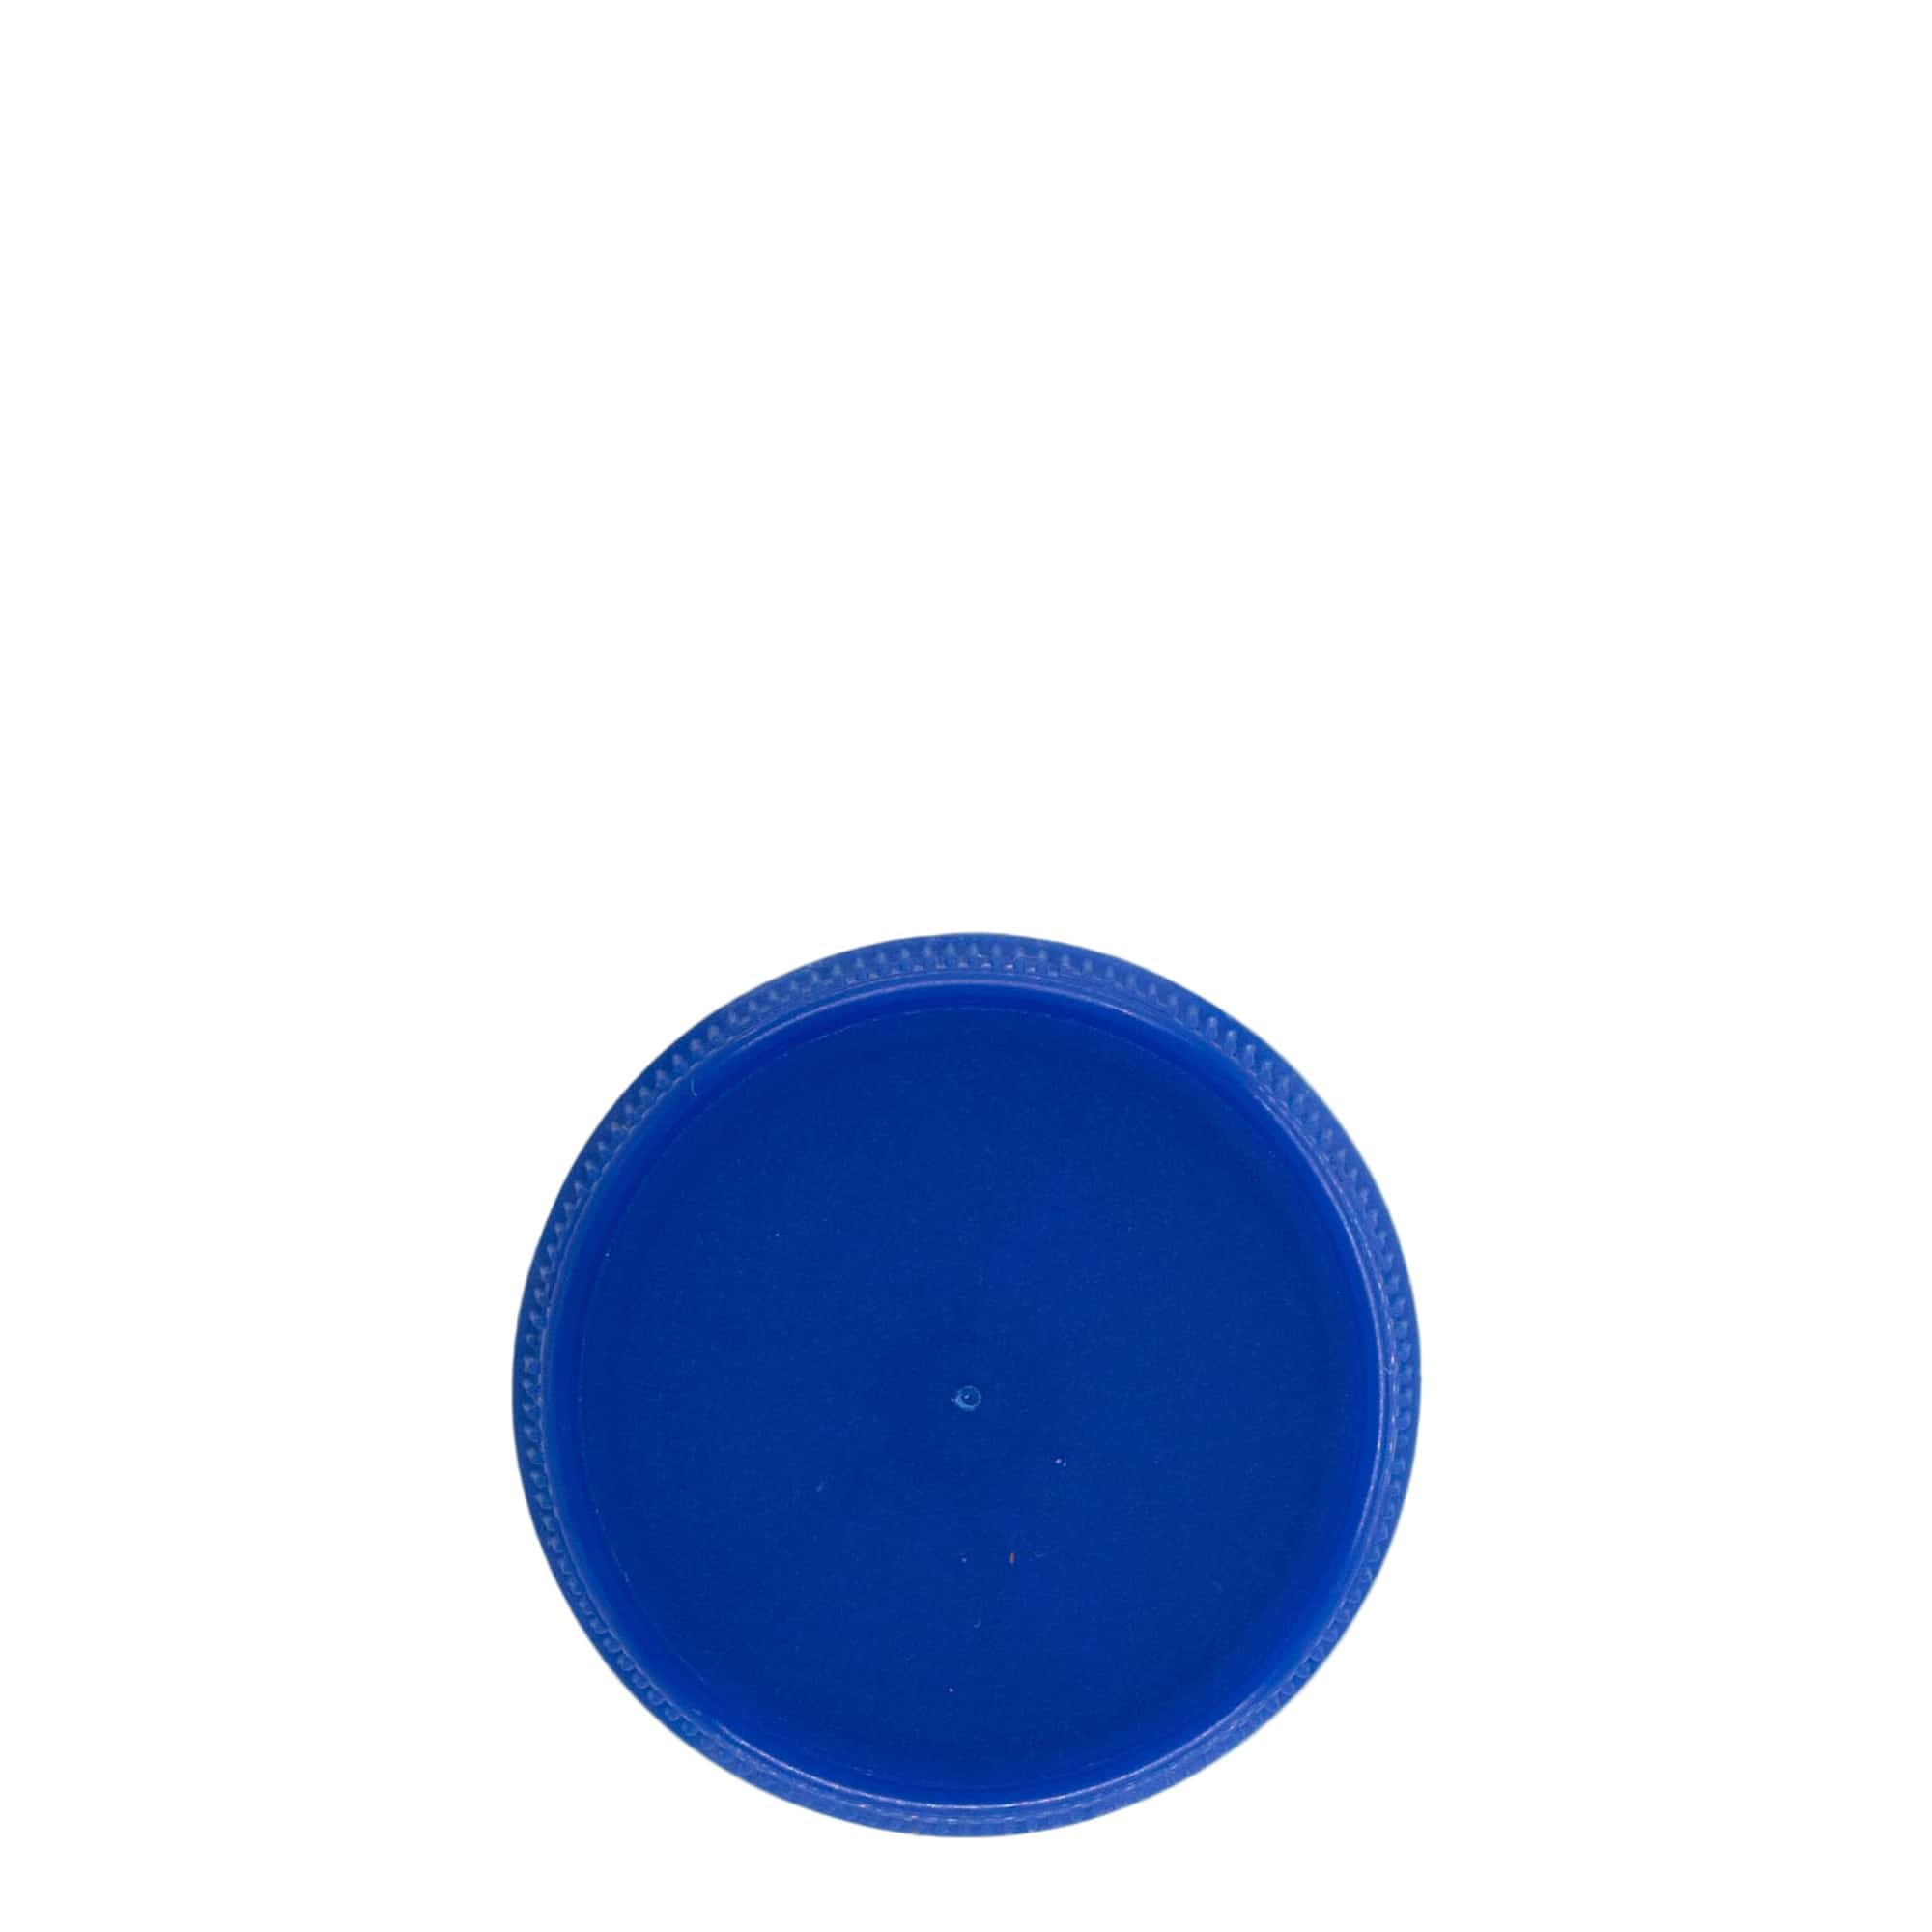 Zakrętka gwint dwustopniowy, tworzywo sztuczne PE, kolor niebieski, do zamknięcia: PET 38 mm